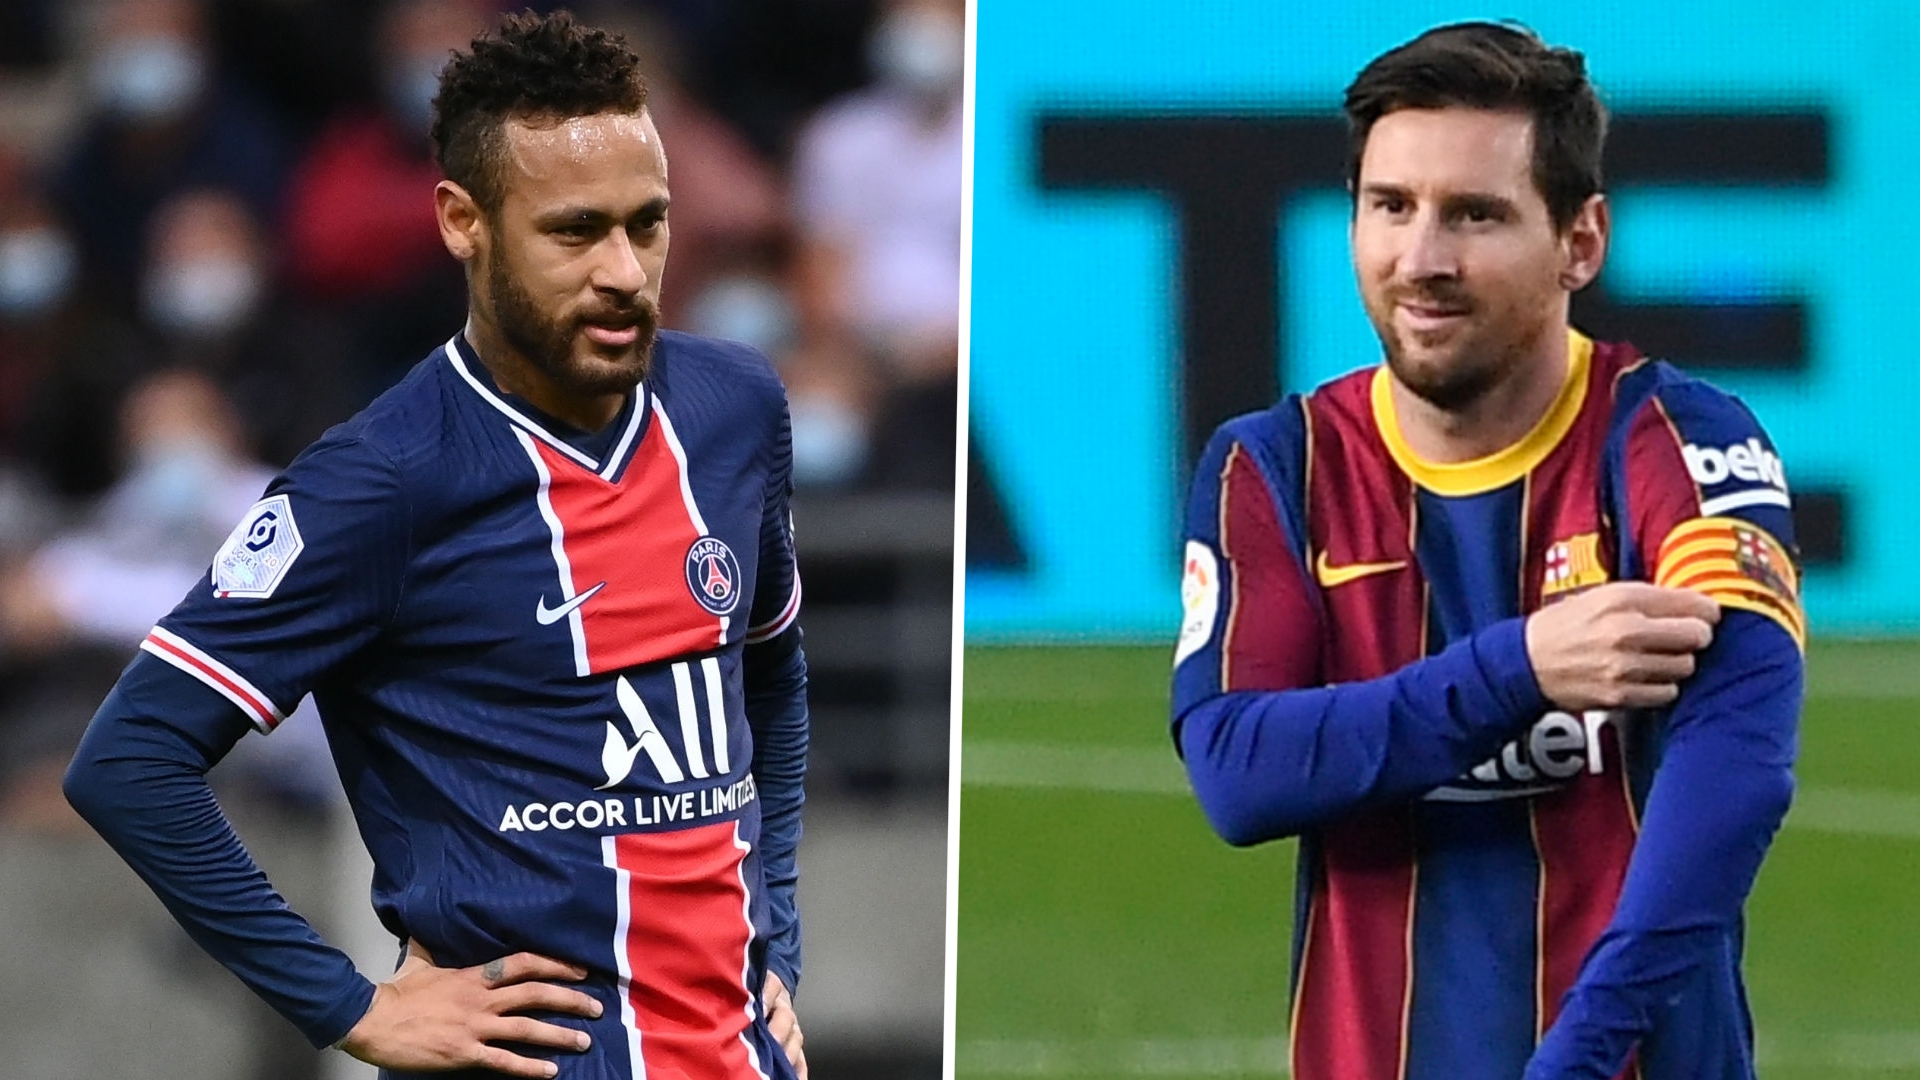 FC Barcelone - Rousaud juge le salaire de Messi insoutenable et rêve de Neymar